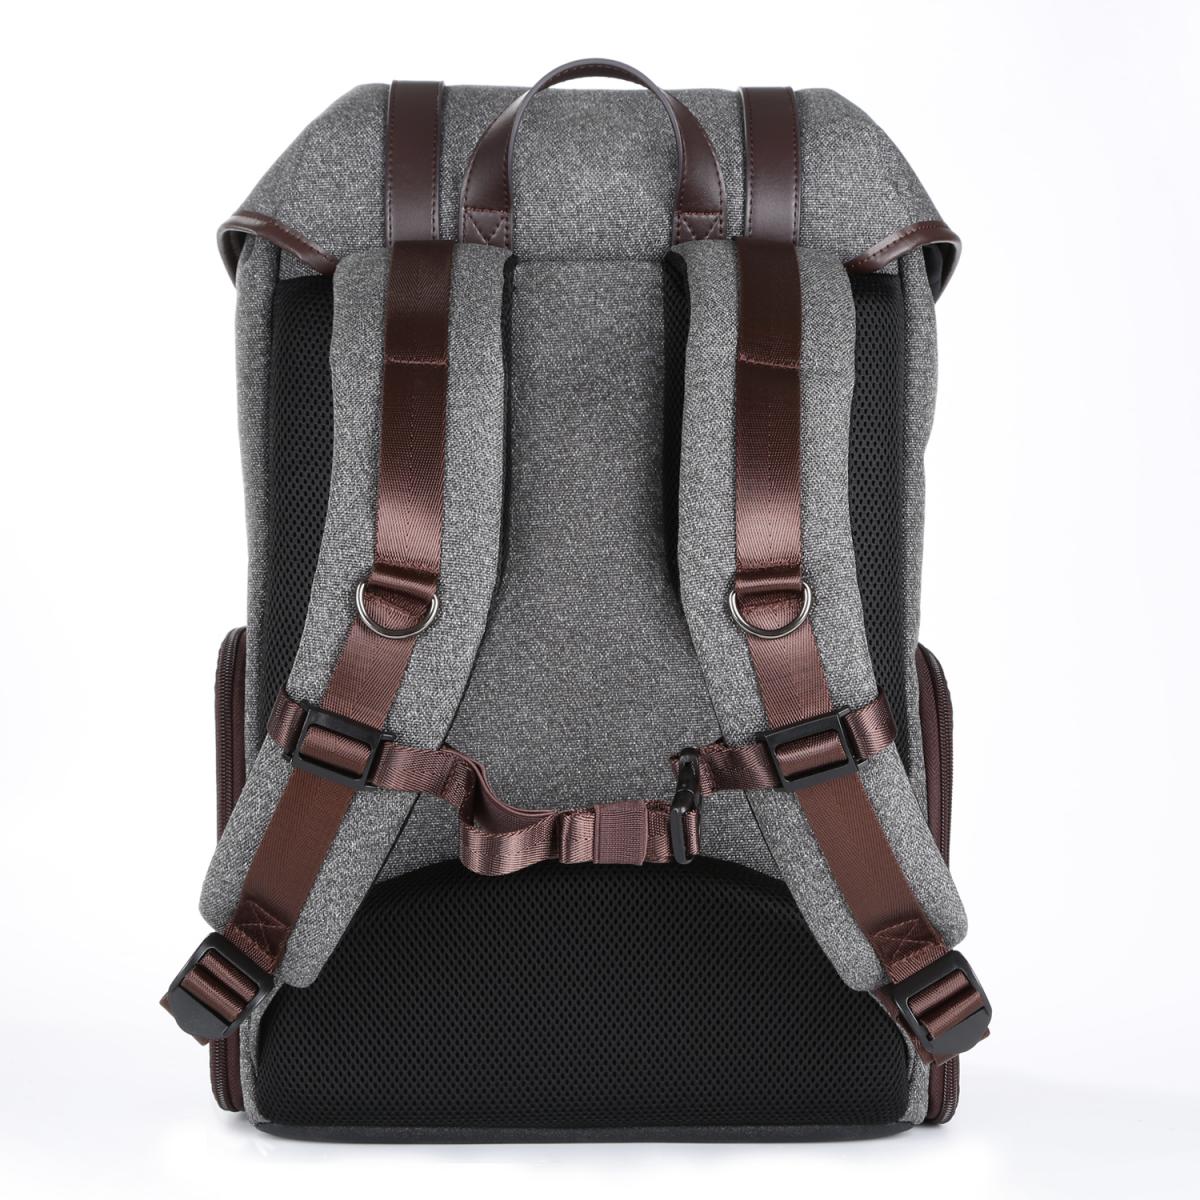 K&F Concept 13.079 DSLR Camera Messenger Shoulder Bag